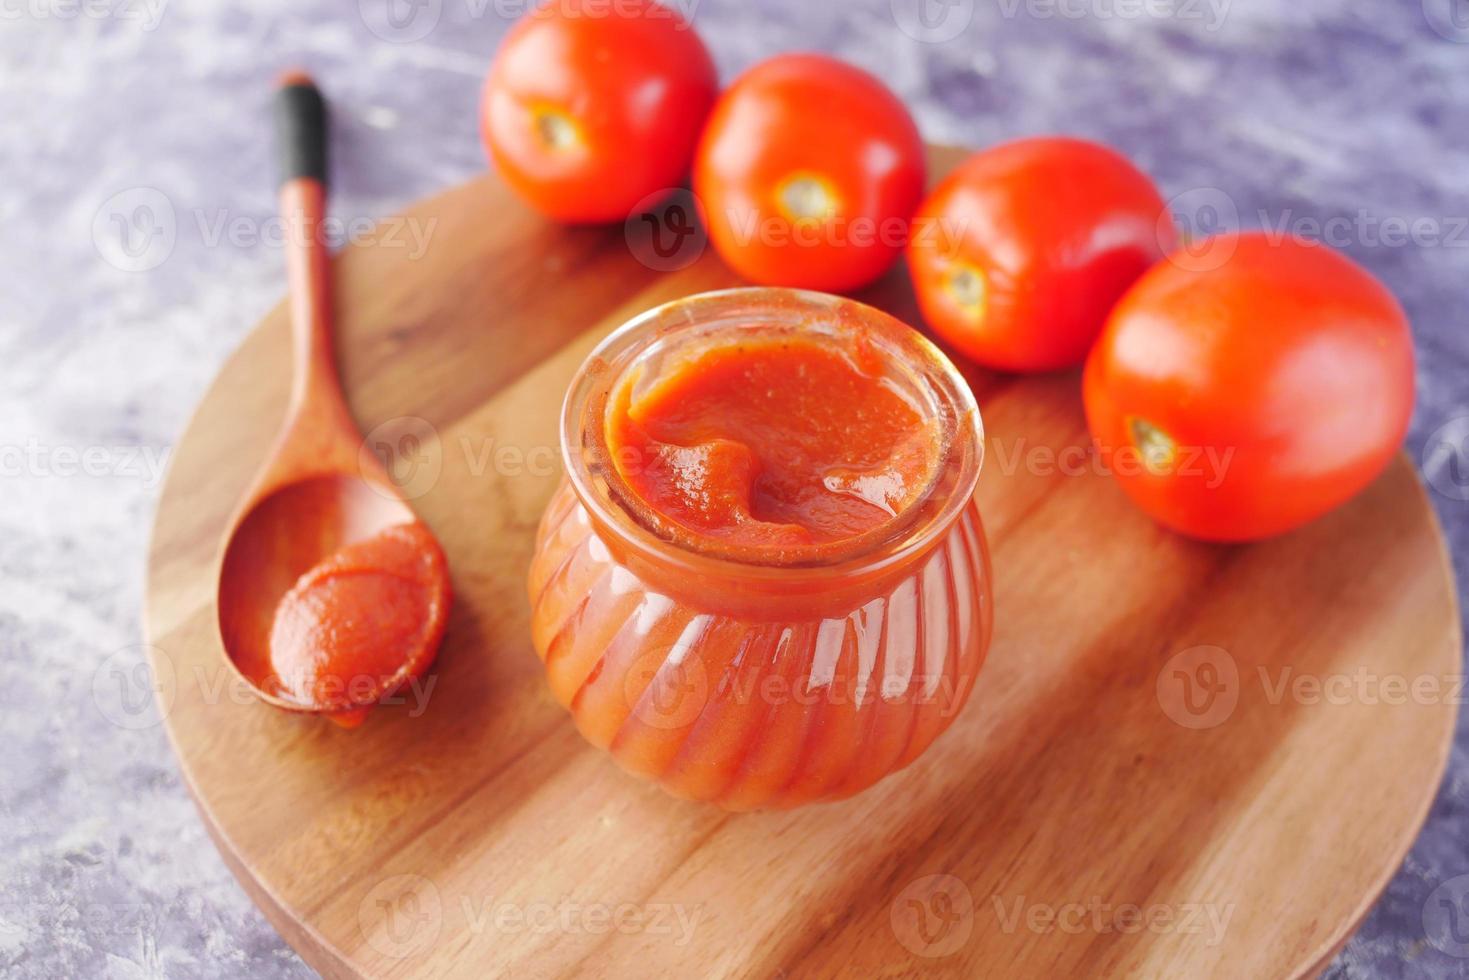 molho de tomate em uma pequena jarra com tomate fresco na mesa foto